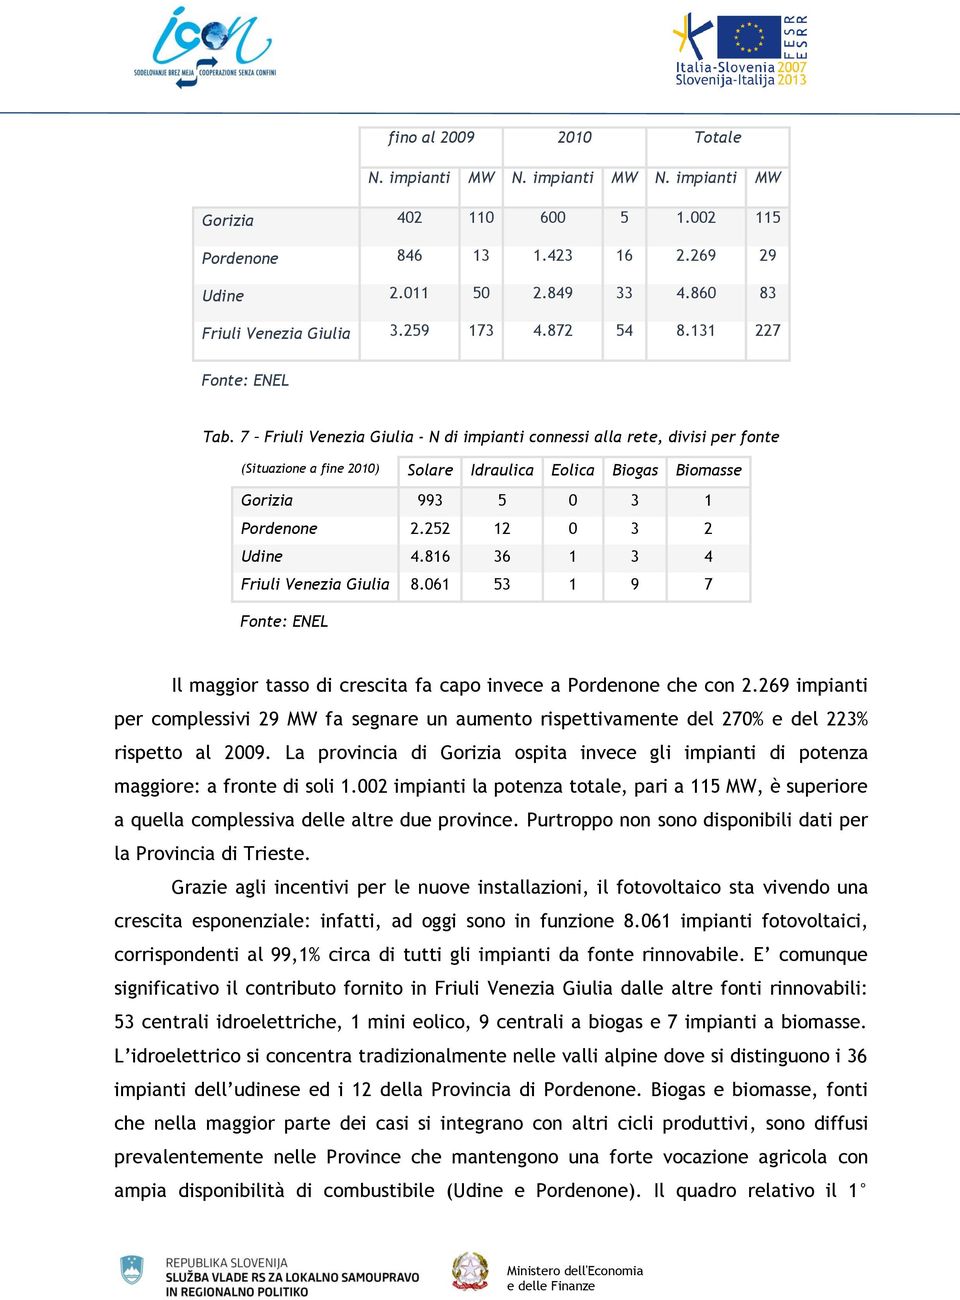 7 Friuli Venezia Giulia - N di impianti connessi alla rete, divisi per fonte (Situazione a fine 2010) Solare Idraulica Eolica Biogas Biomasse Gorizia 993 5 0 3 1 Pordenone 2.252 12 0 3 2 Udine 4.